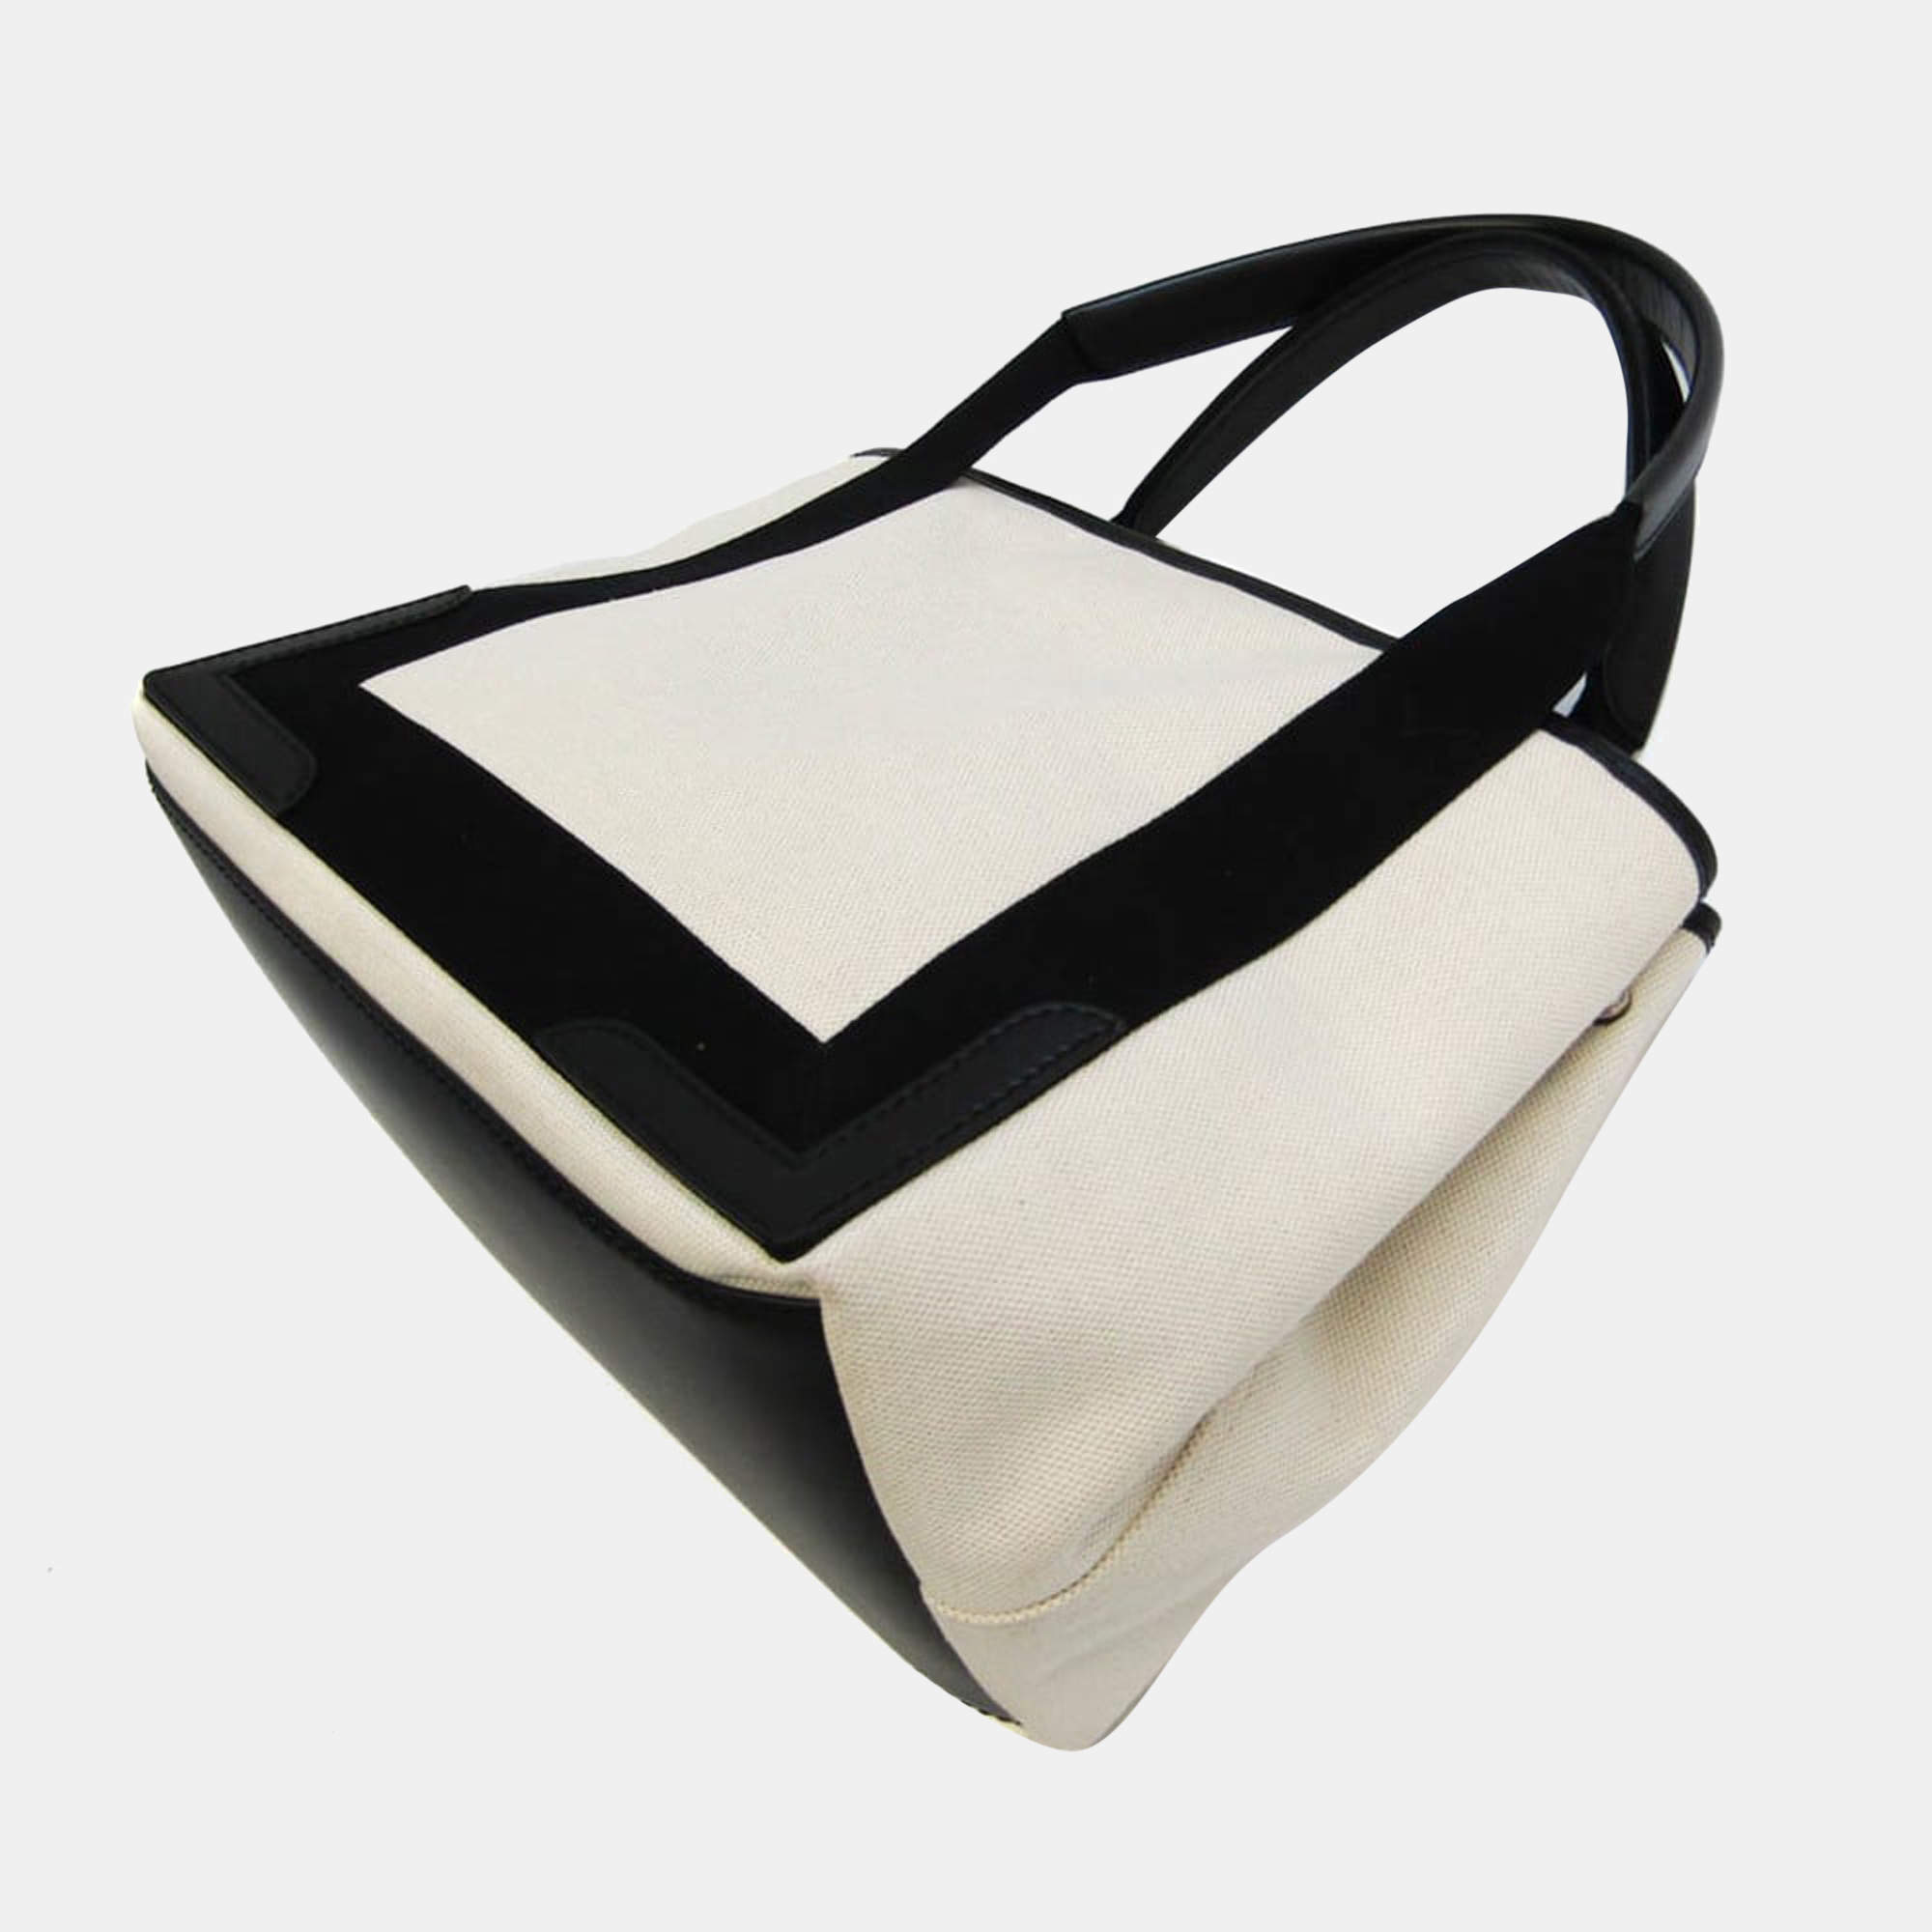 Balenciaga Tote Bags for Women